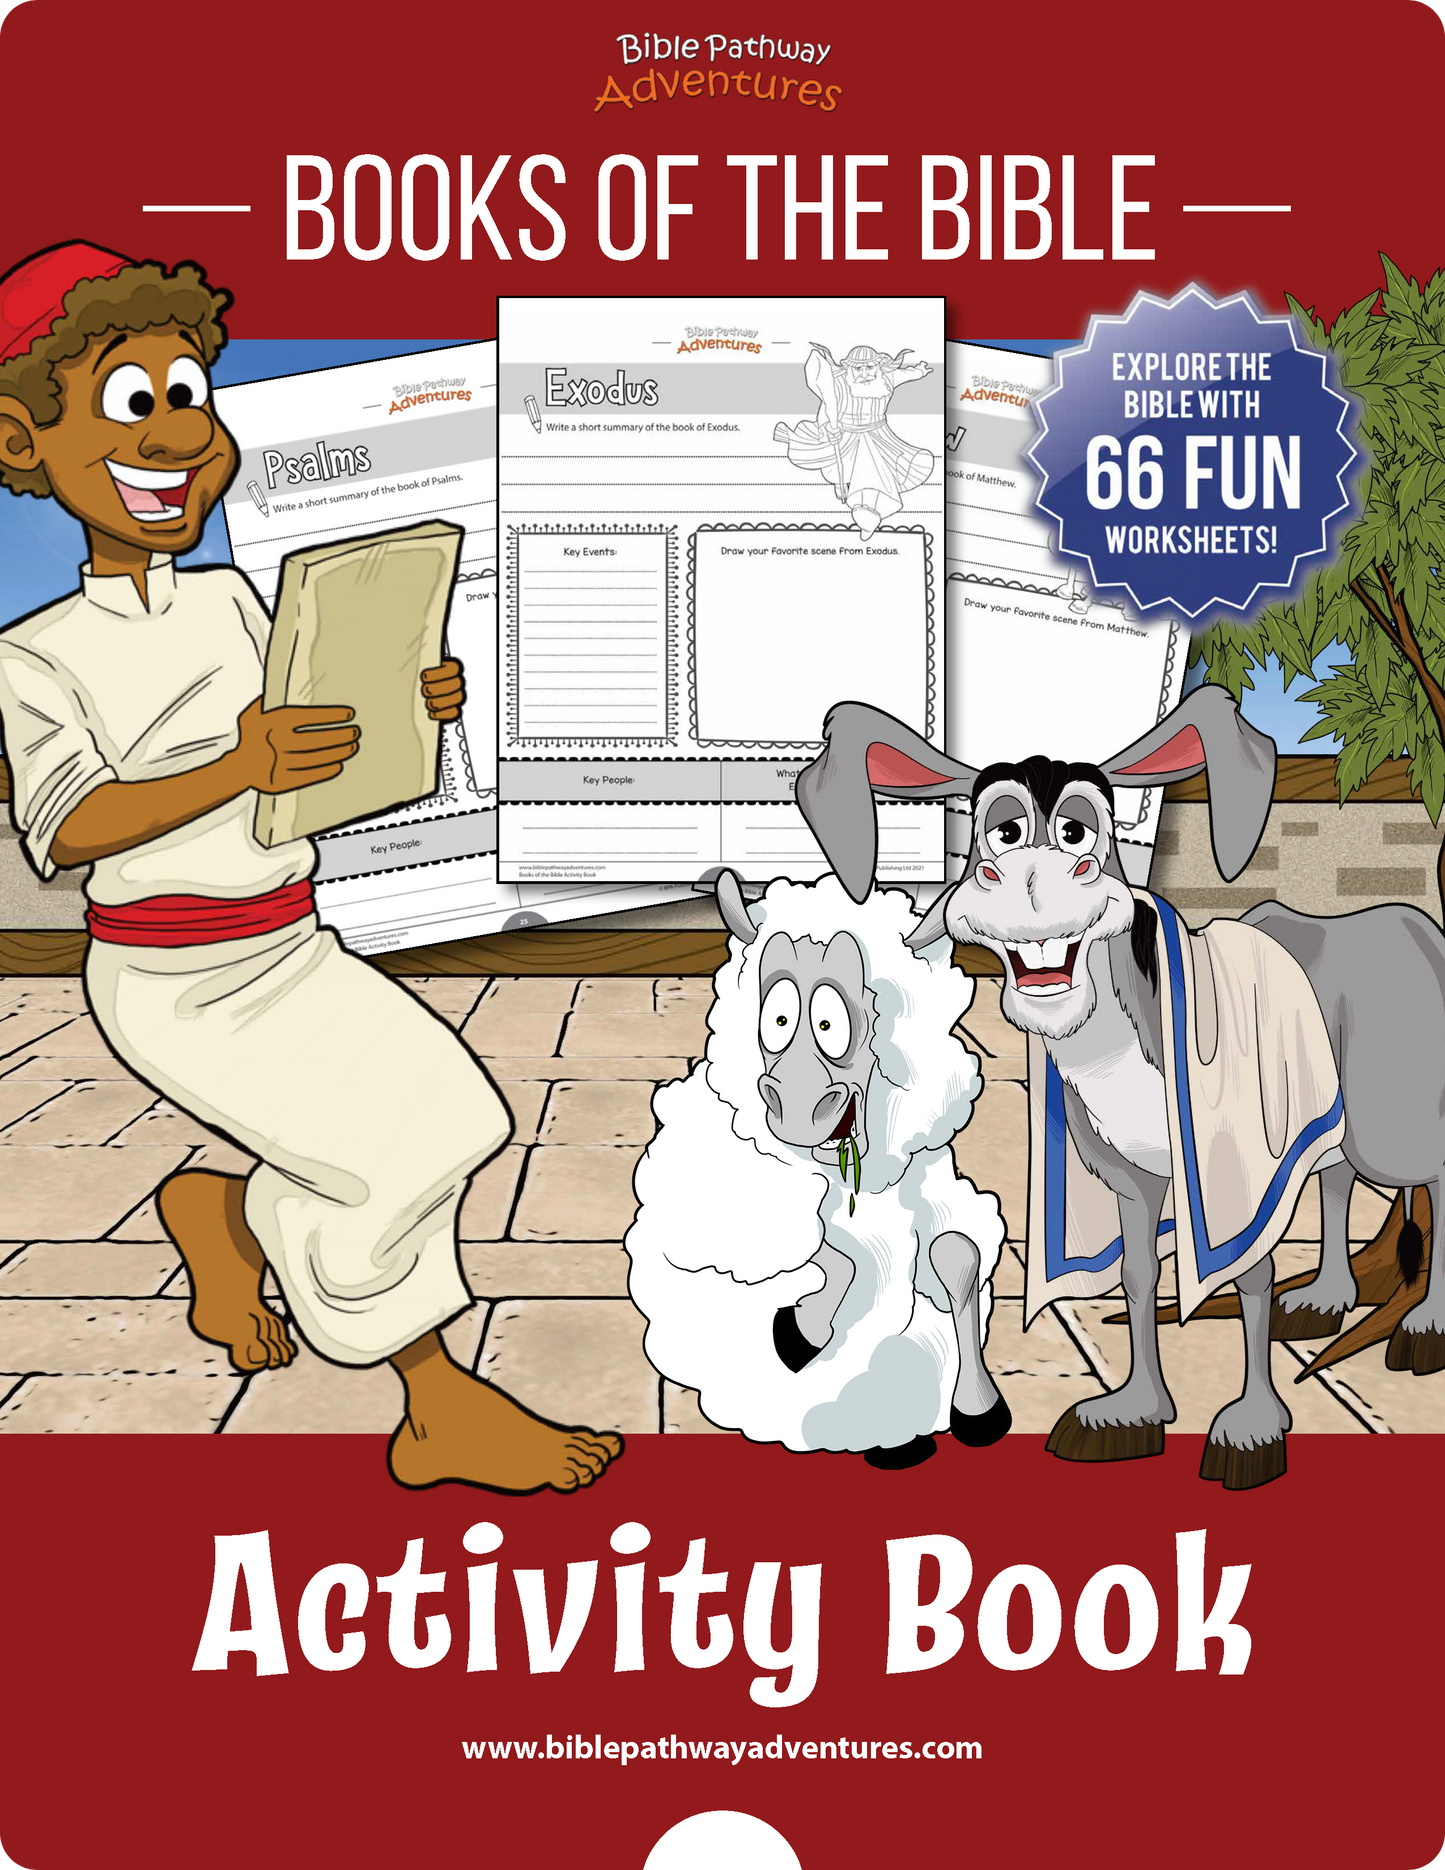 Libros de la Biblia Libro de actividades